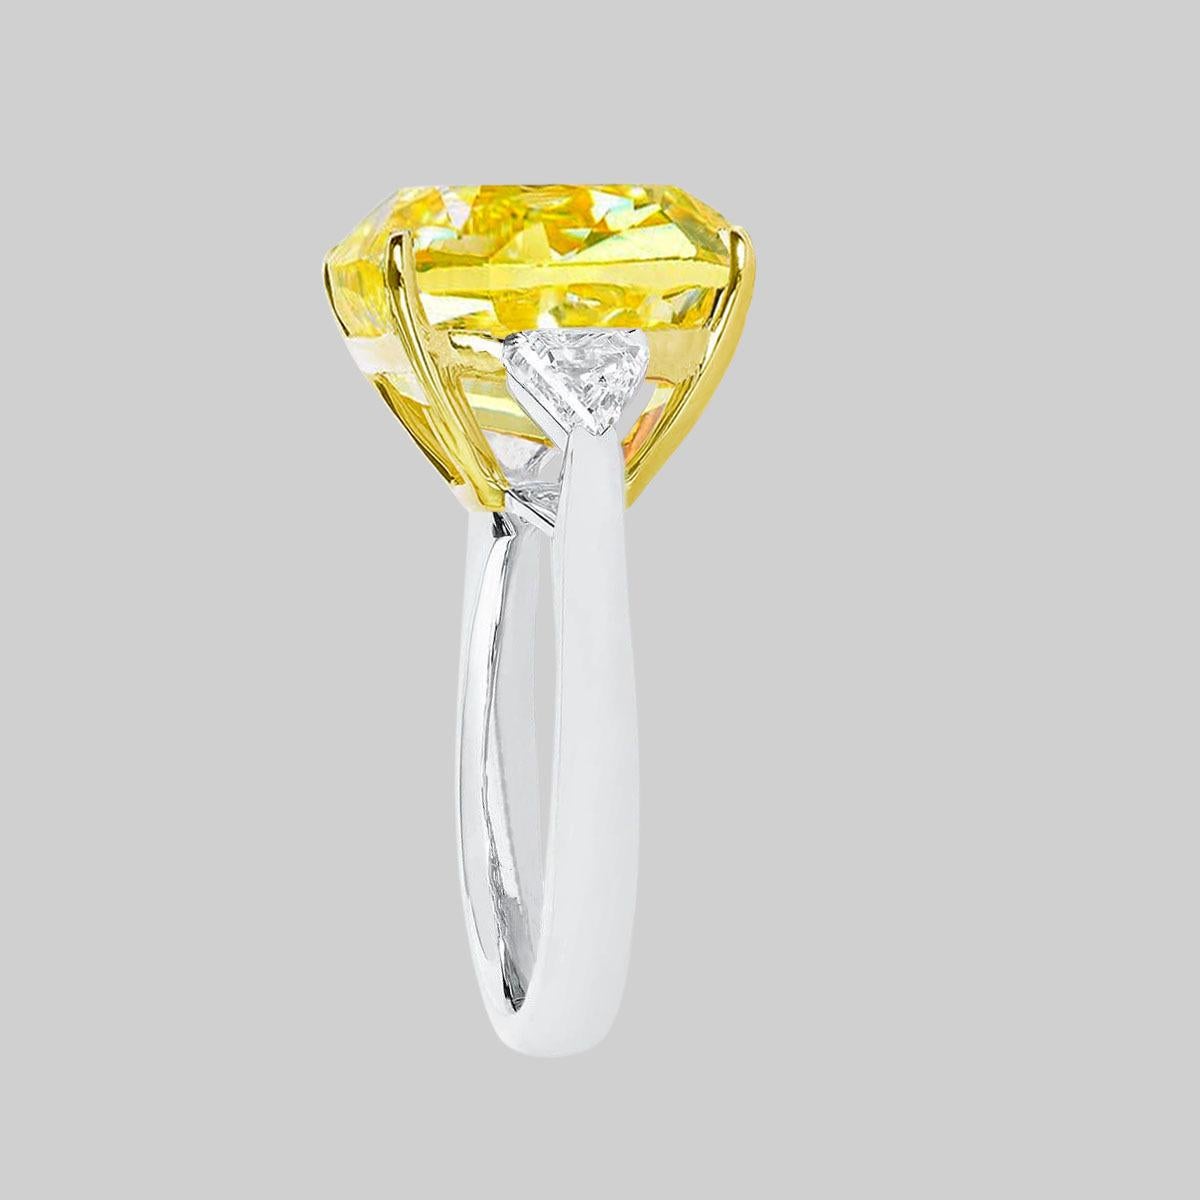 Whiting bague en diamant de taille coussin certifié GIA fancy VIVID jaune avec deux diamants trillion naturels de chaque côté montés sur or jaune et or blanc 18 carats.

La pierre principale brille d'un jaune très fort et d'une couleur vive !


